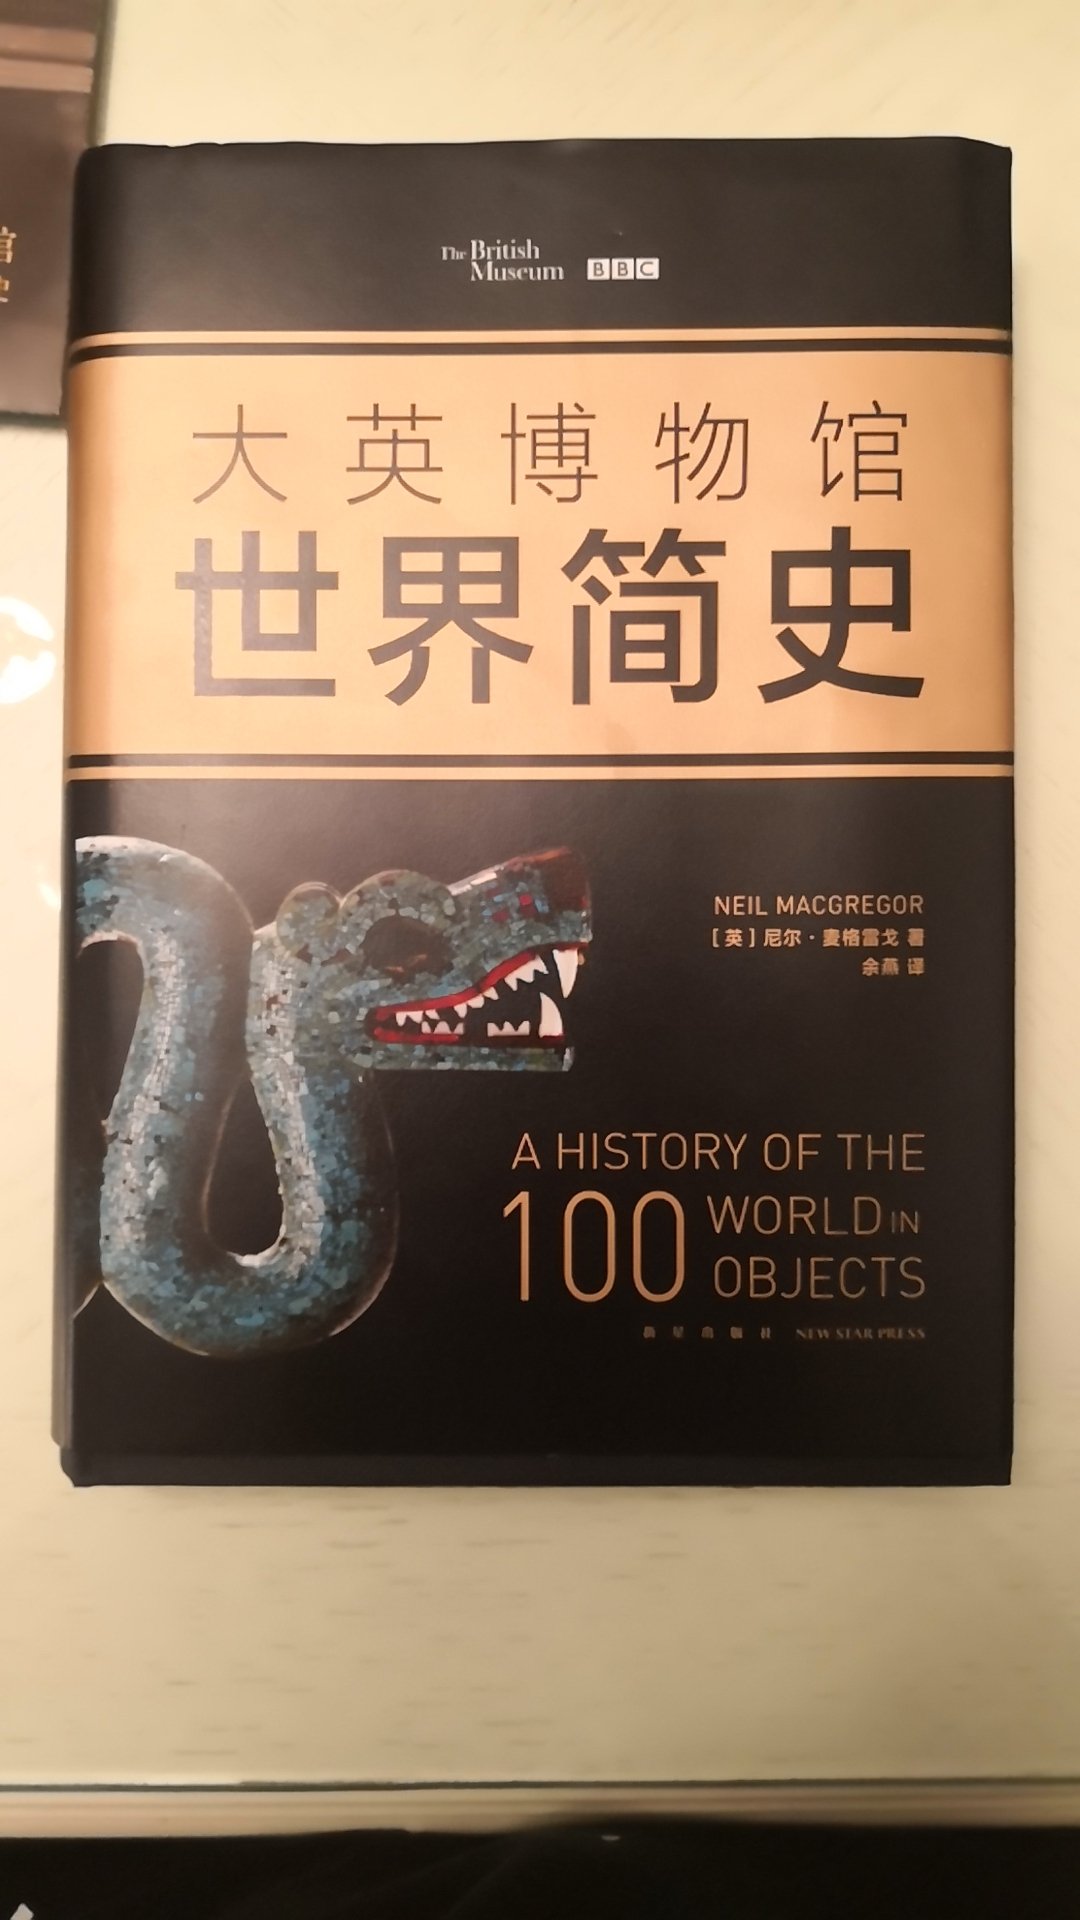 这本书非常的厚，而且内容丰富，印刷质量好。唯一的缺点是不经看，基本上一天就能看完。里面有许多关于中国历史的部分，其评价还是比较客观的。装帖设计讲究放在书架上，还是非常值得观赏的。